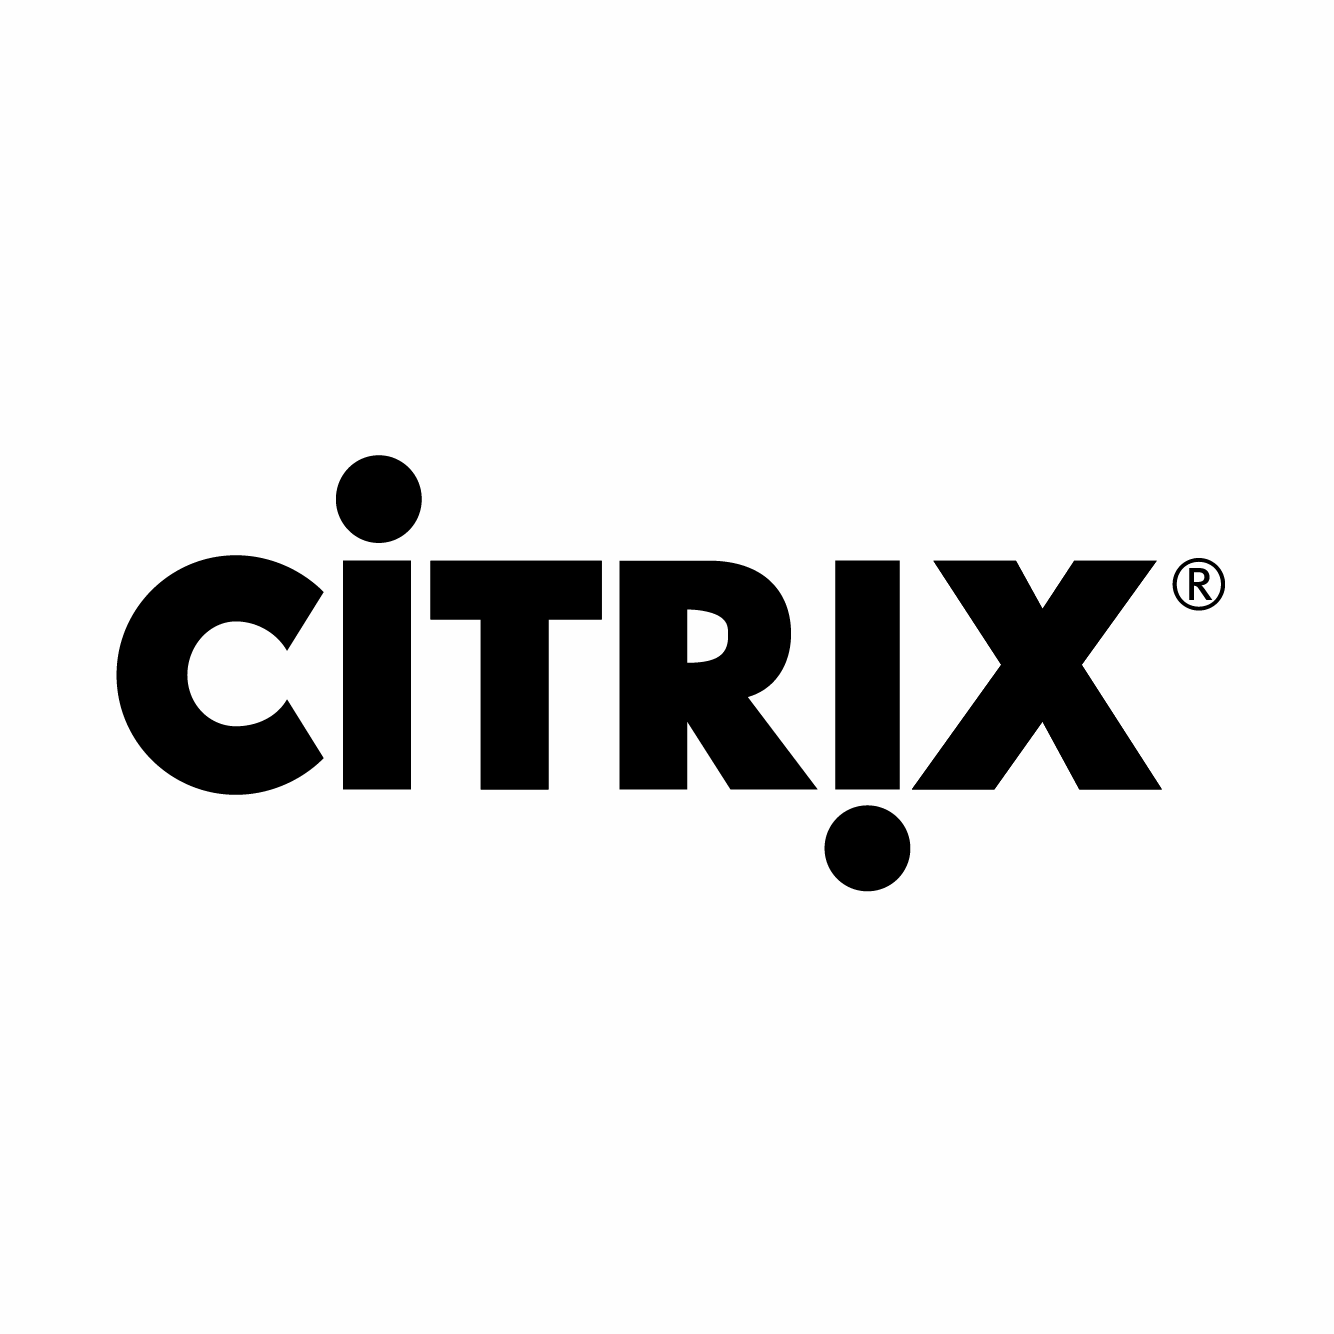 https://securetech.local/wp-content/uploads/2019/02/12.CITRIX.png